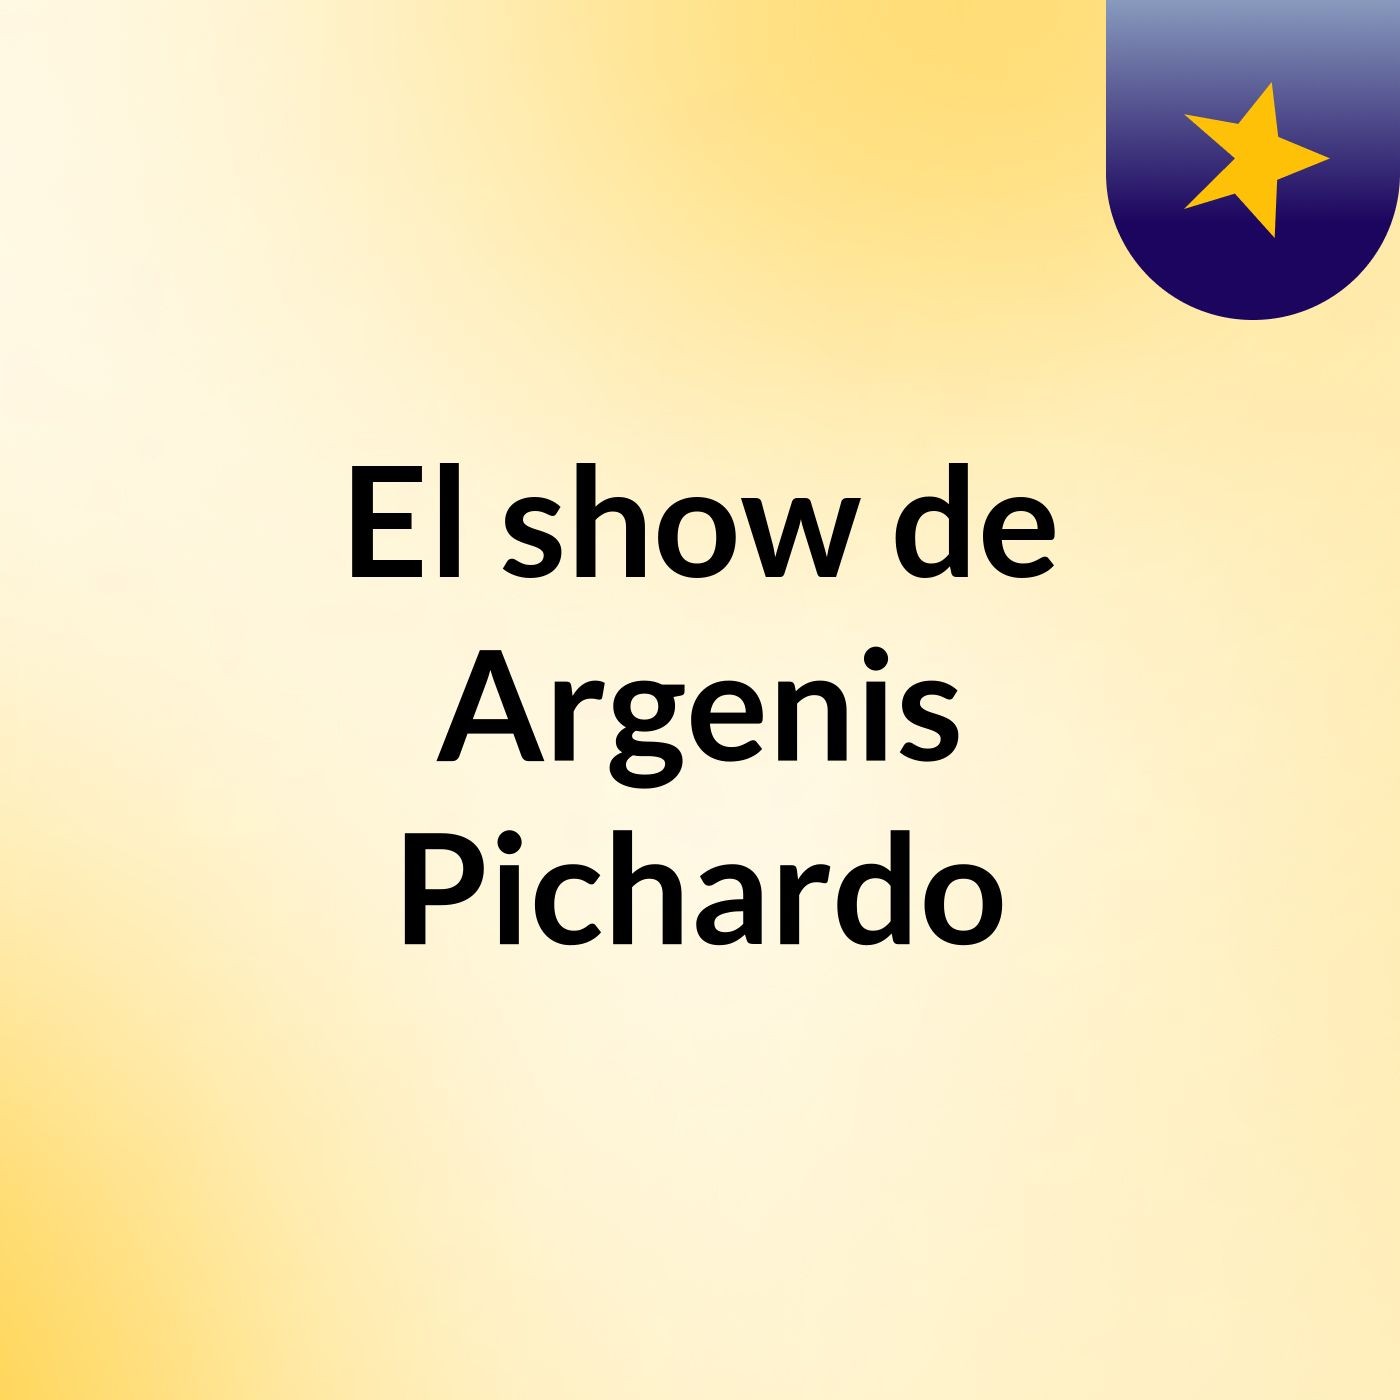 El show de Argenis Pichardo